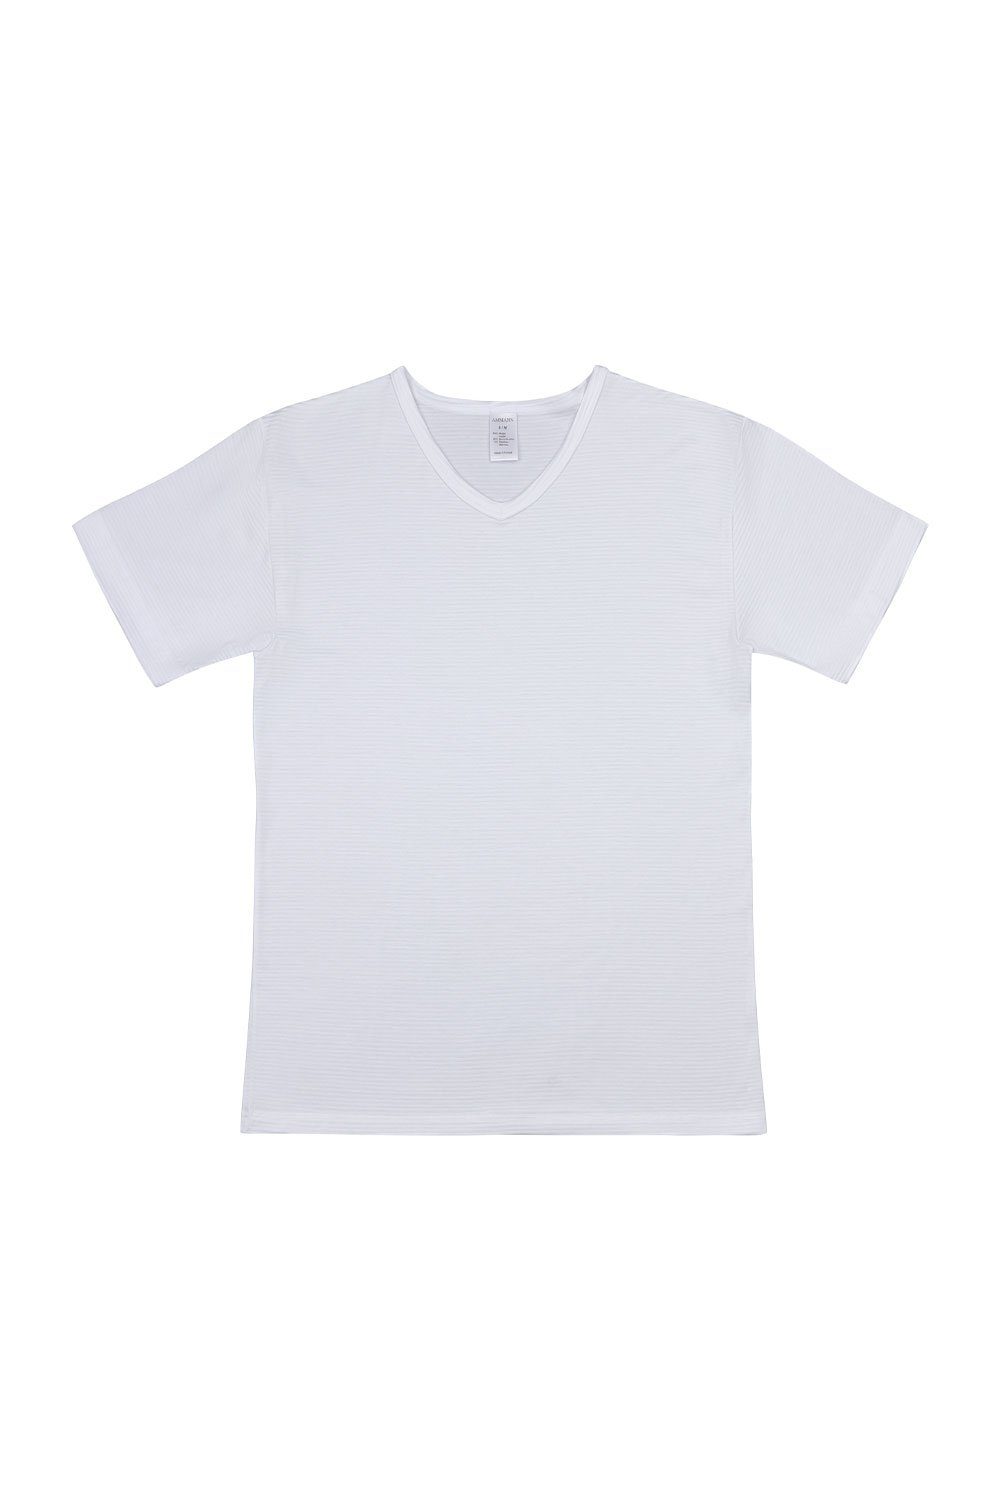 Ammann T-Shirt V-Shirt 700257 weiß